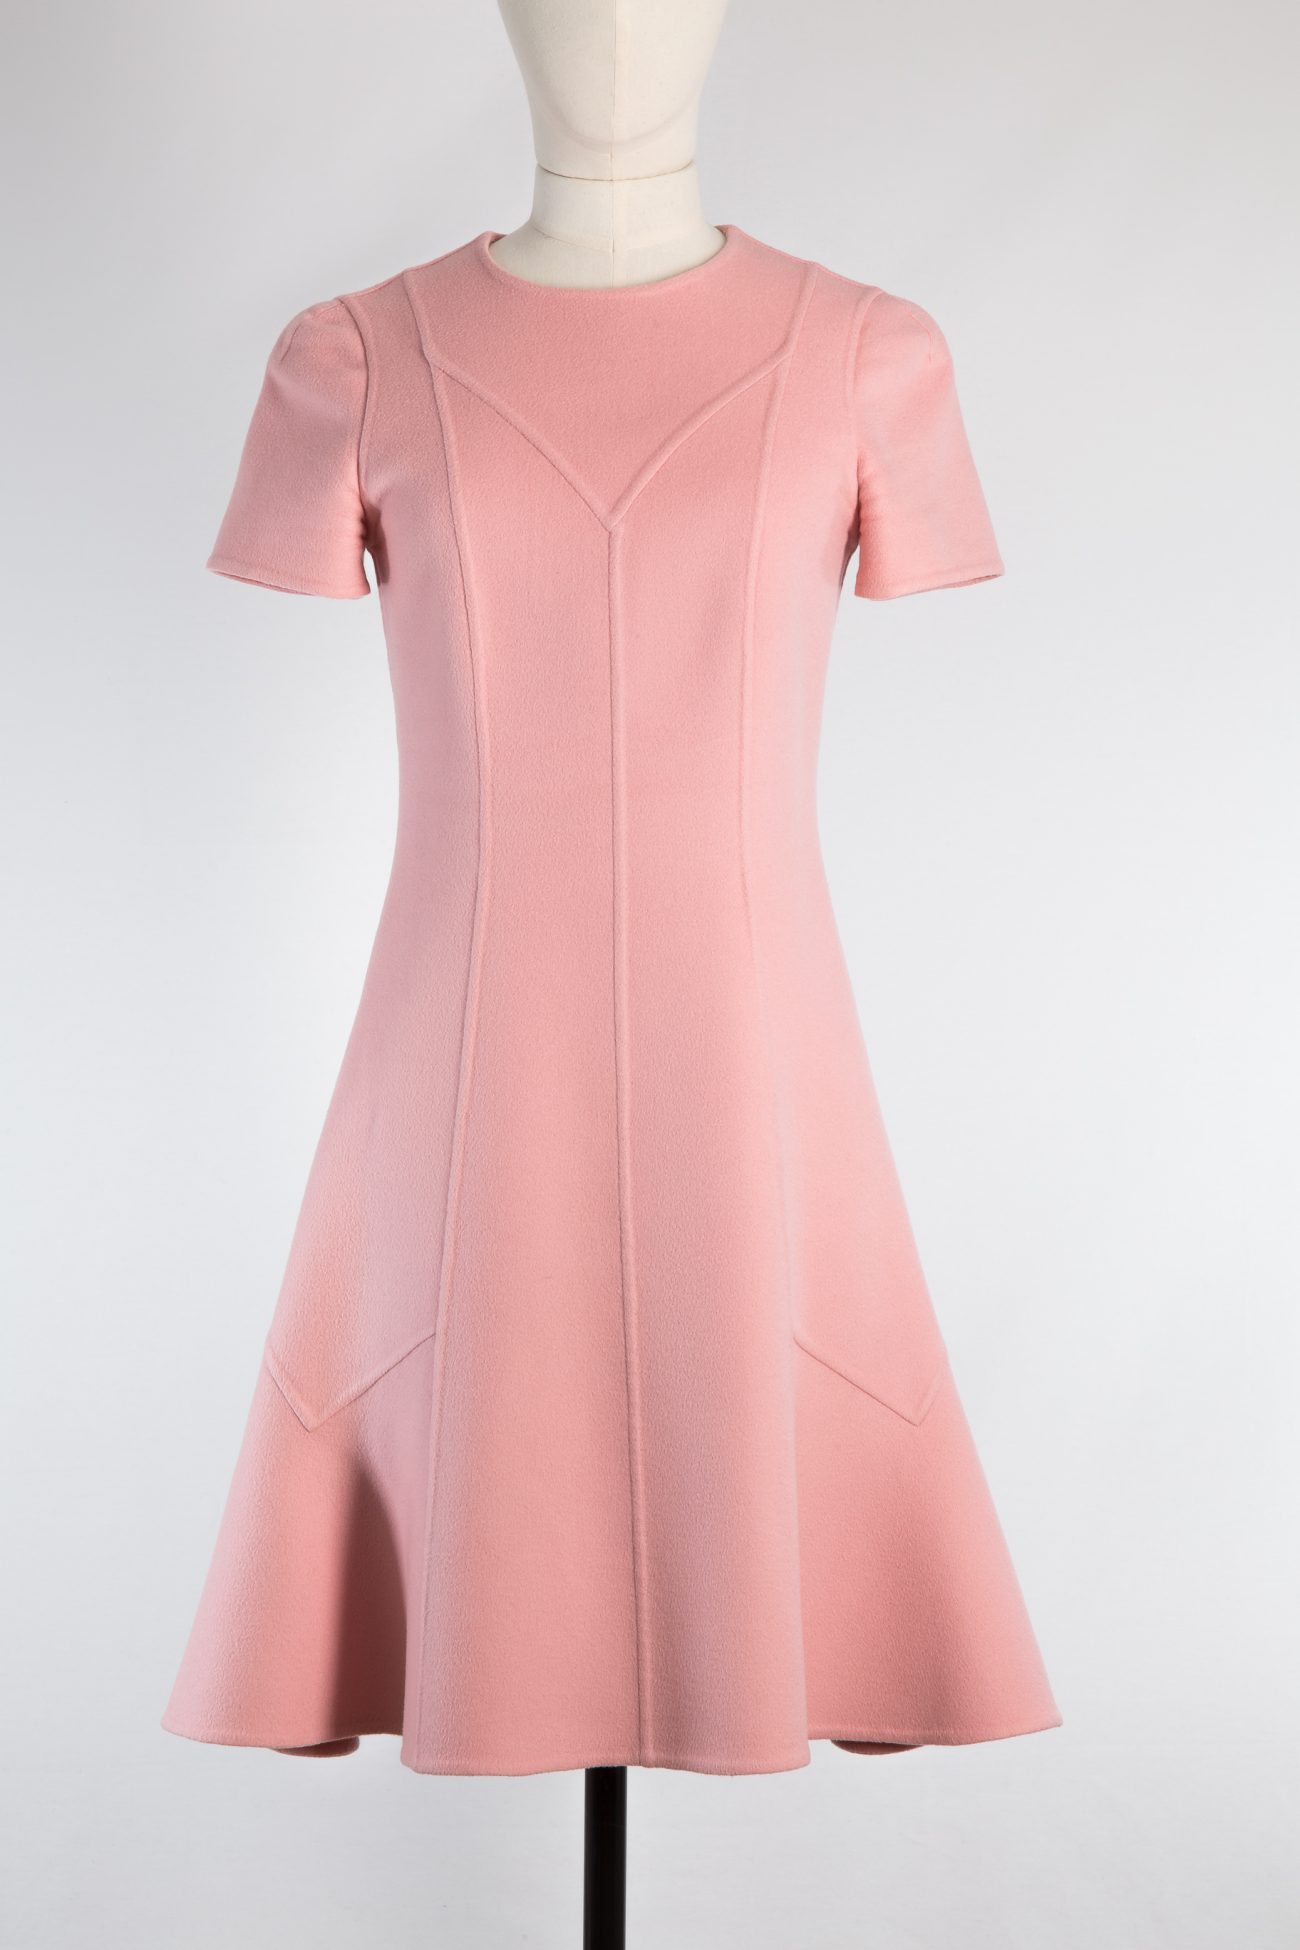 Louis Vuitton Dress, FR34 - Huntessa Luxury Online Consignment